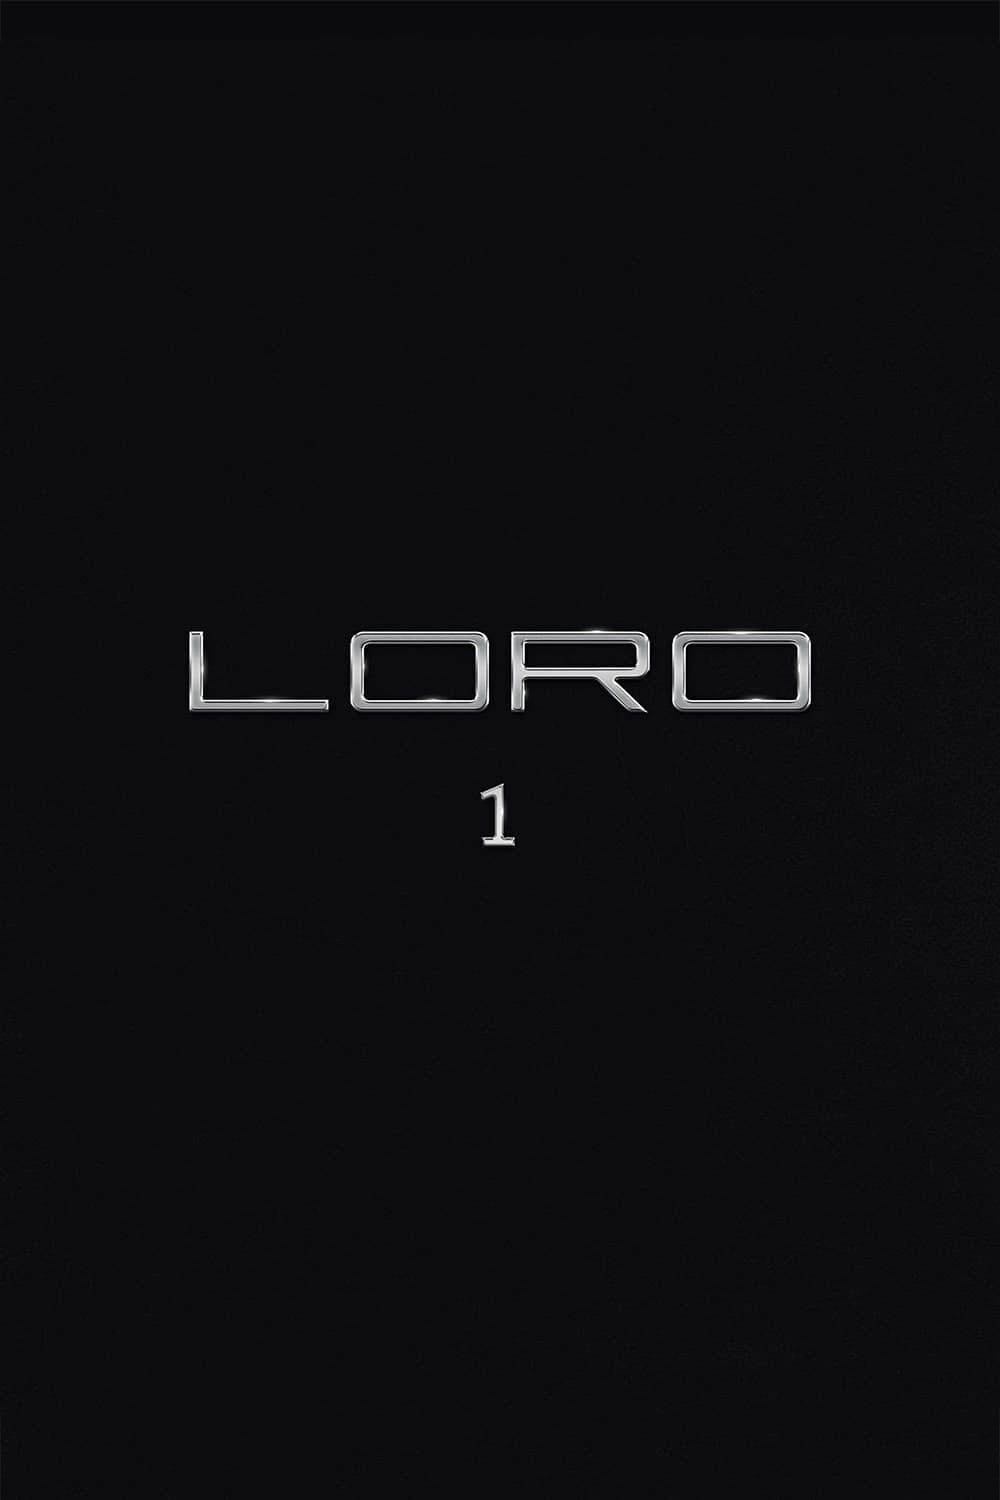 Loro 1 (Loro 1) [2018]